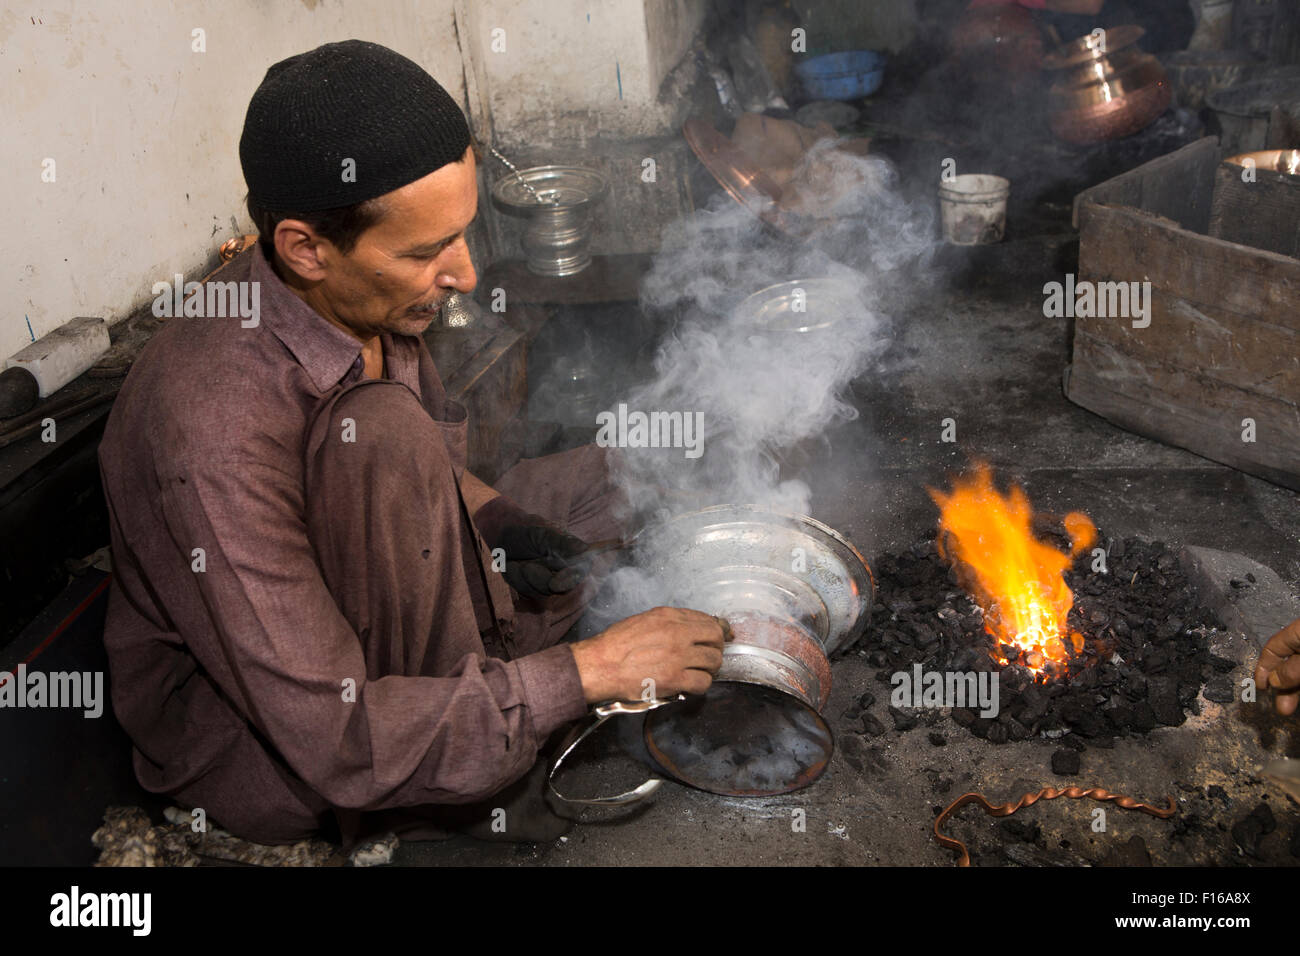 L'Inde, le Jammu-et-Cachemire, Srinagar, vieille ville, Sri Ranbir Gunj bazaar, artisan l'application de placage argent cuivre chaud de navire Banque D'Images